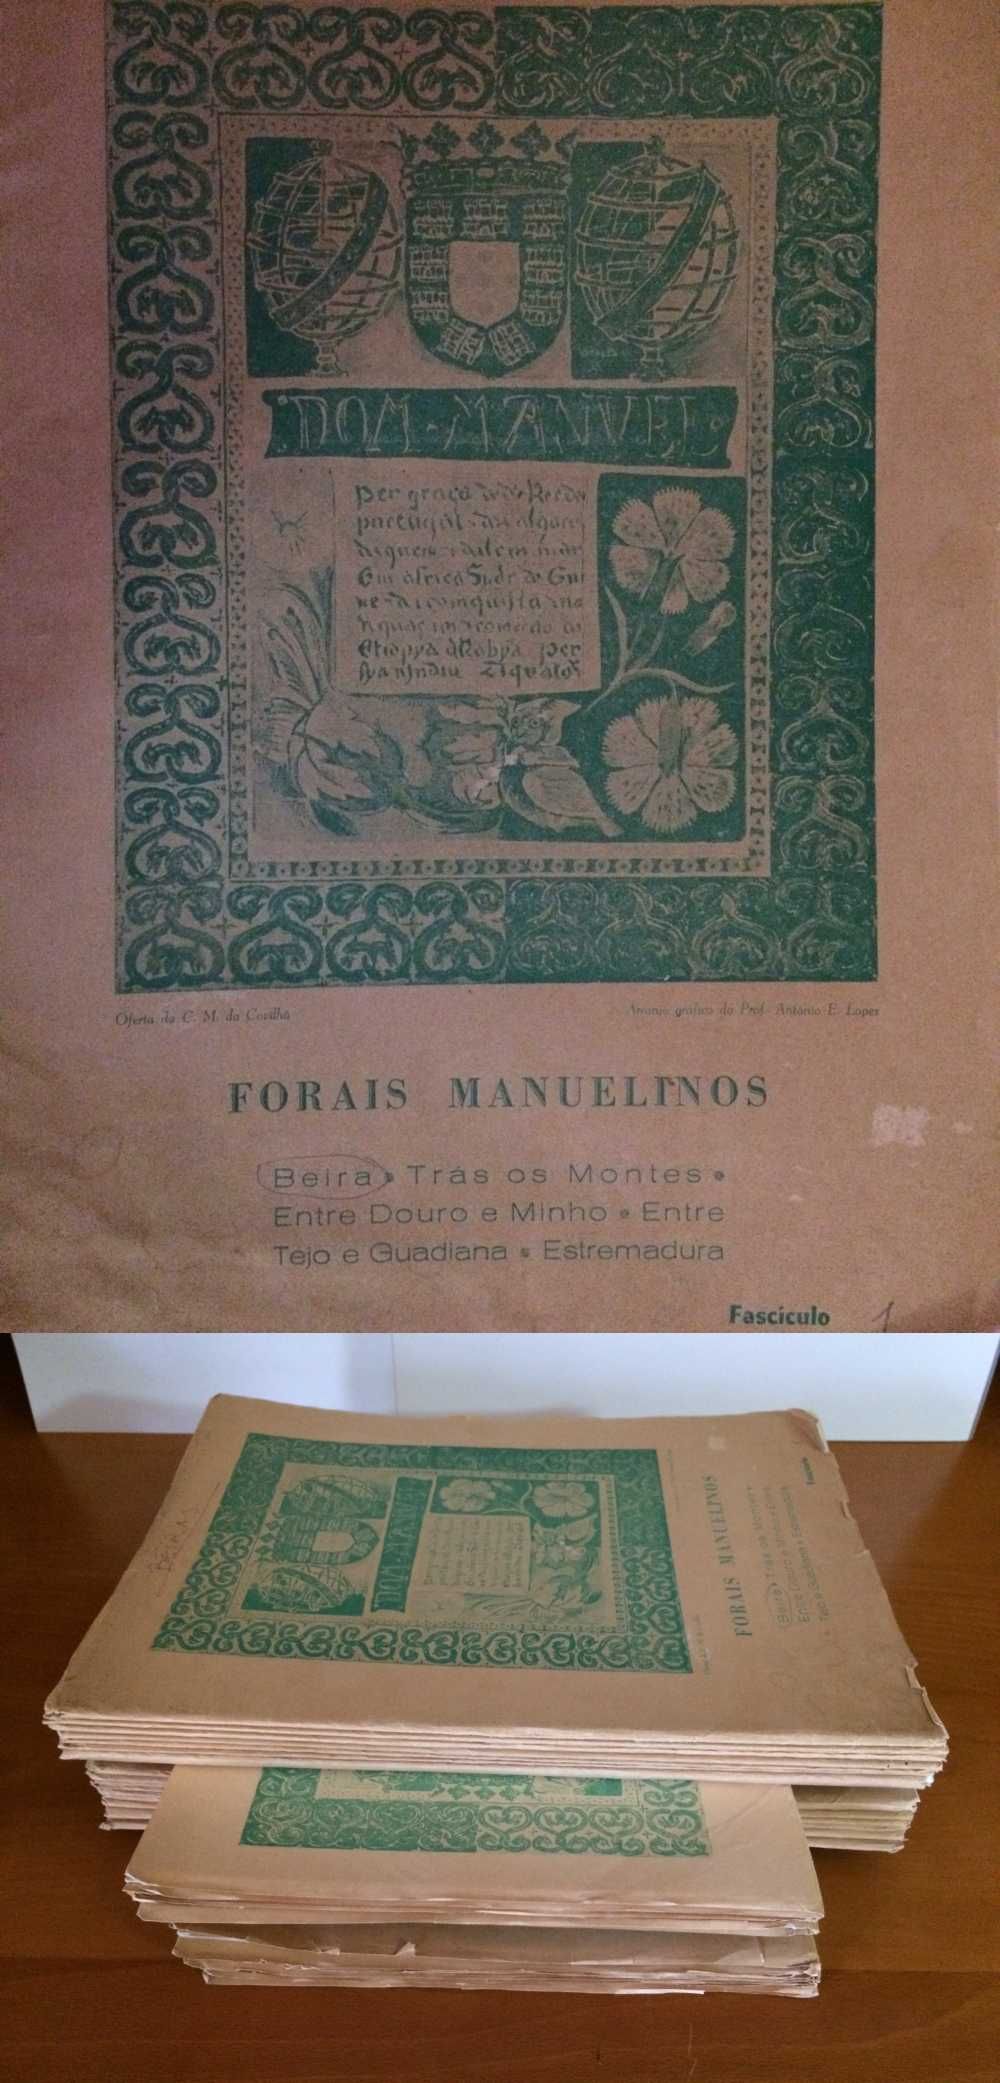 Fascículos dos FORAIS Manuelinos do Reino de Portugal e do Algarve